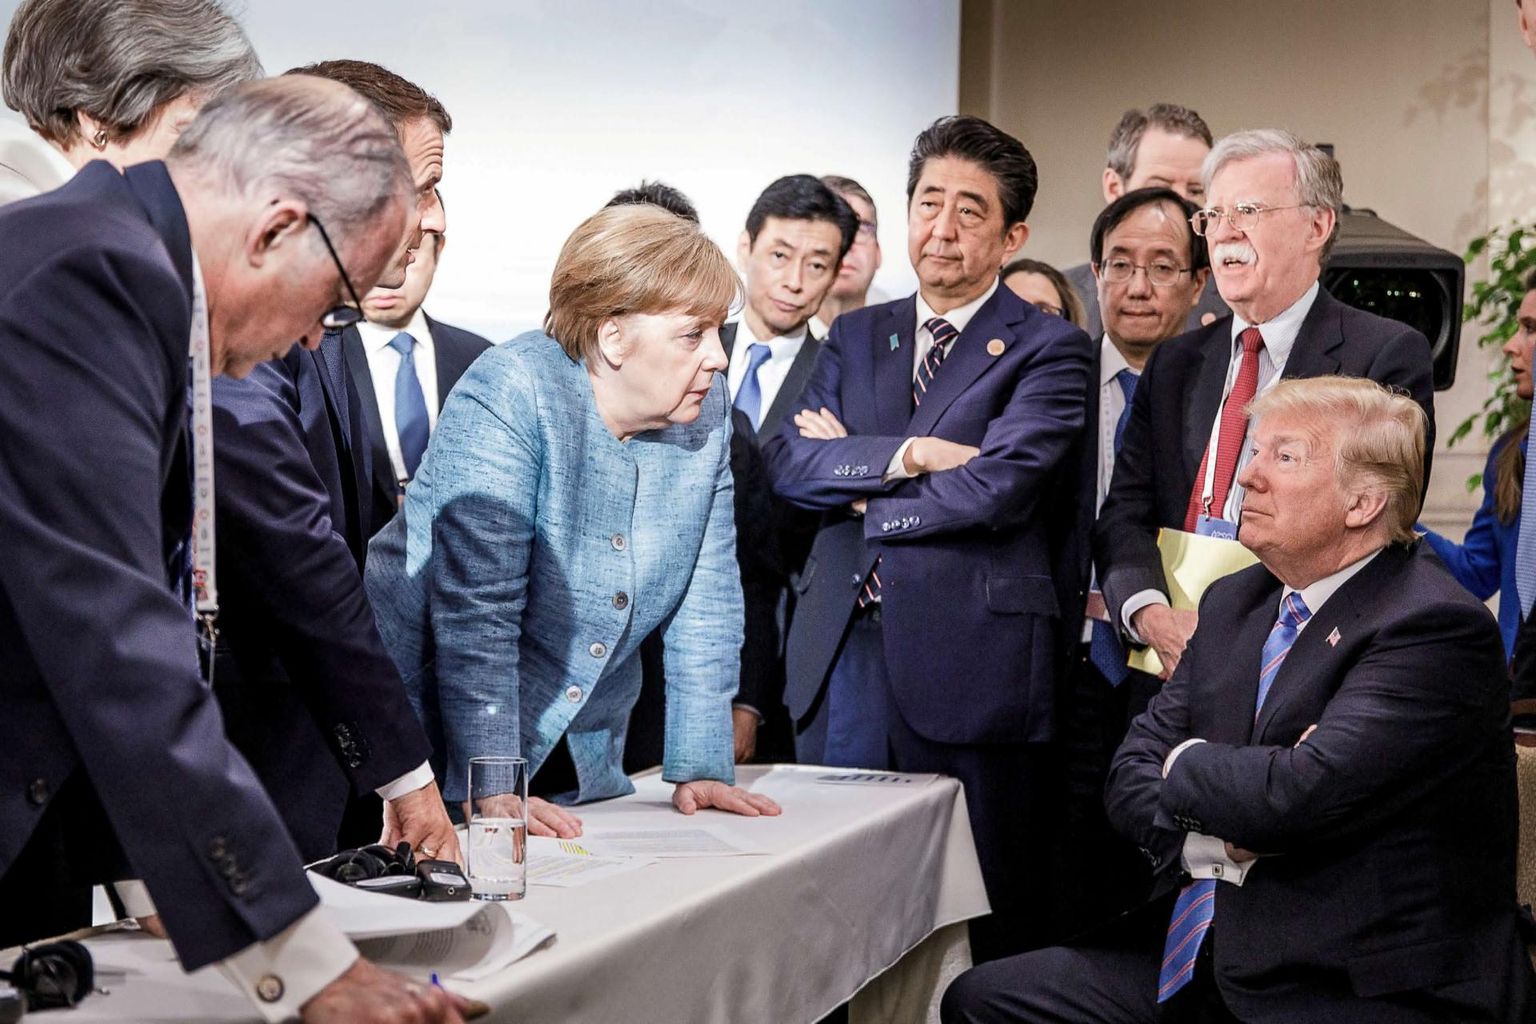 Pole võimatu, et NATOt võib ees oodata sarnane surmaeelne hetk, mille elasid läbi G7 riigijuhid eelmise aasta juunis Kanadas Québecis, kui tippkohtumisel paljastusid selgesti ülejäänud liidrite erimeelsused Ameerika Ühendriikide presidendi Donald Trumpiga.